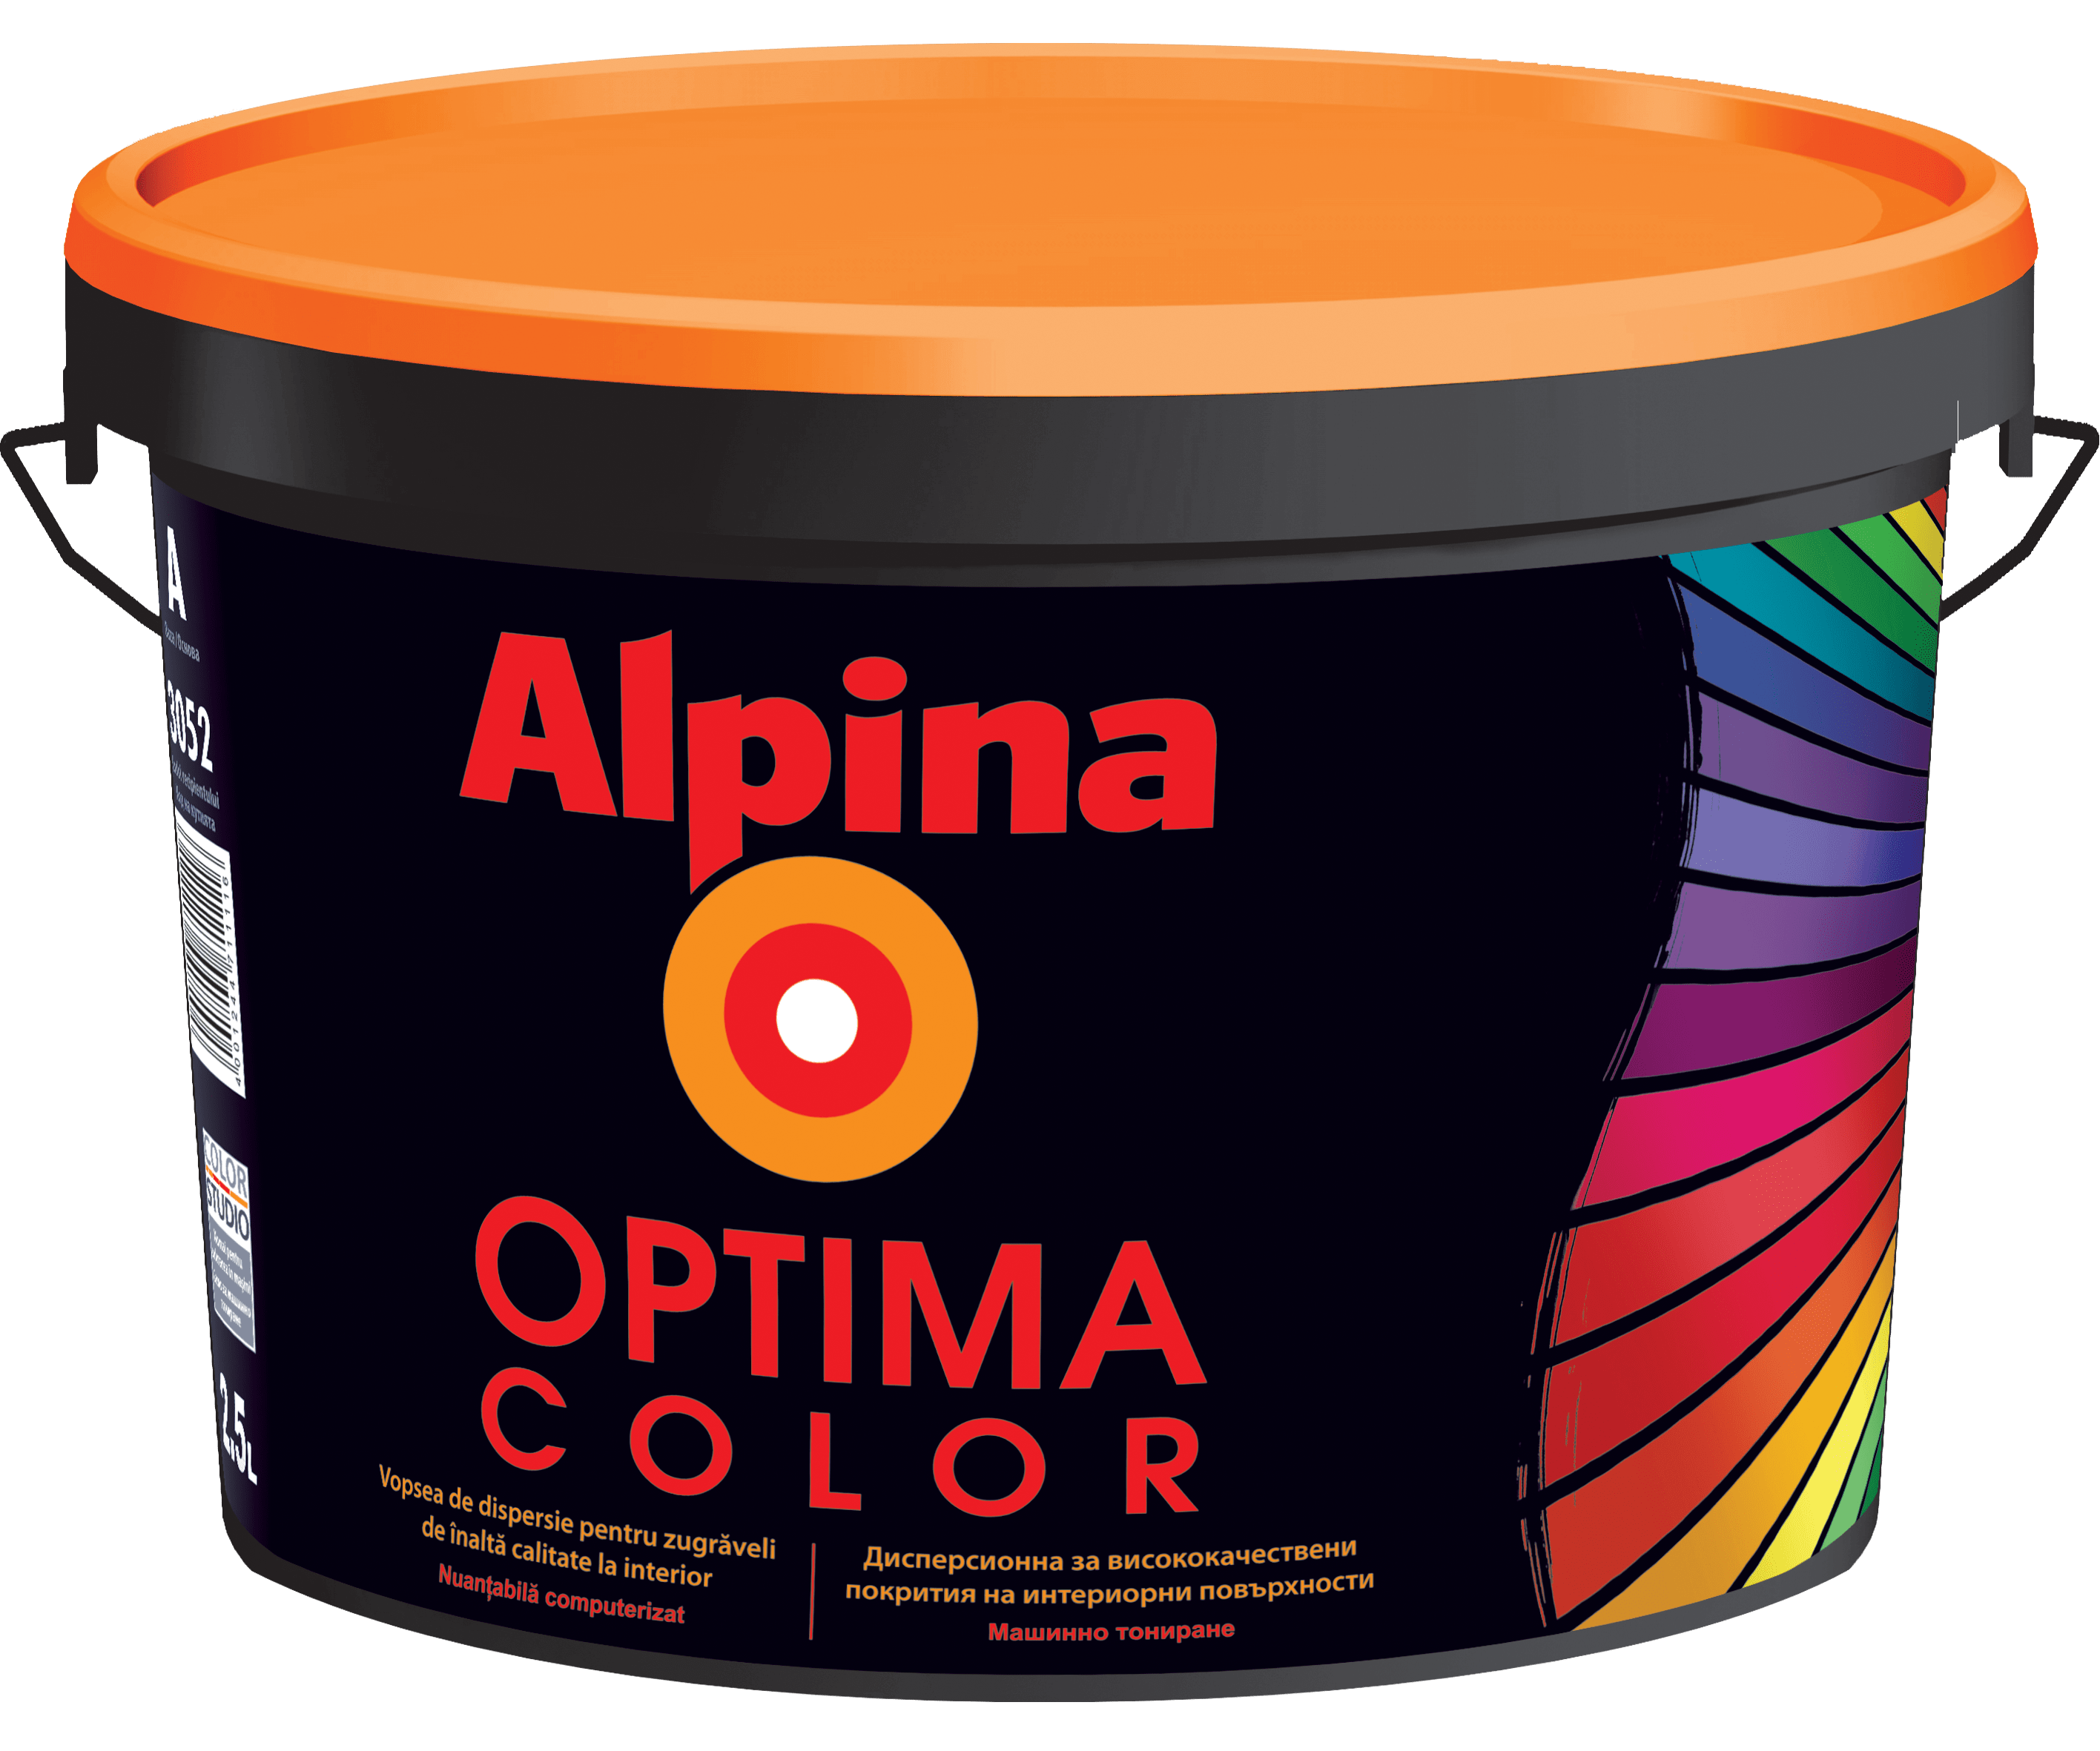 Alpina Optima Color Baza